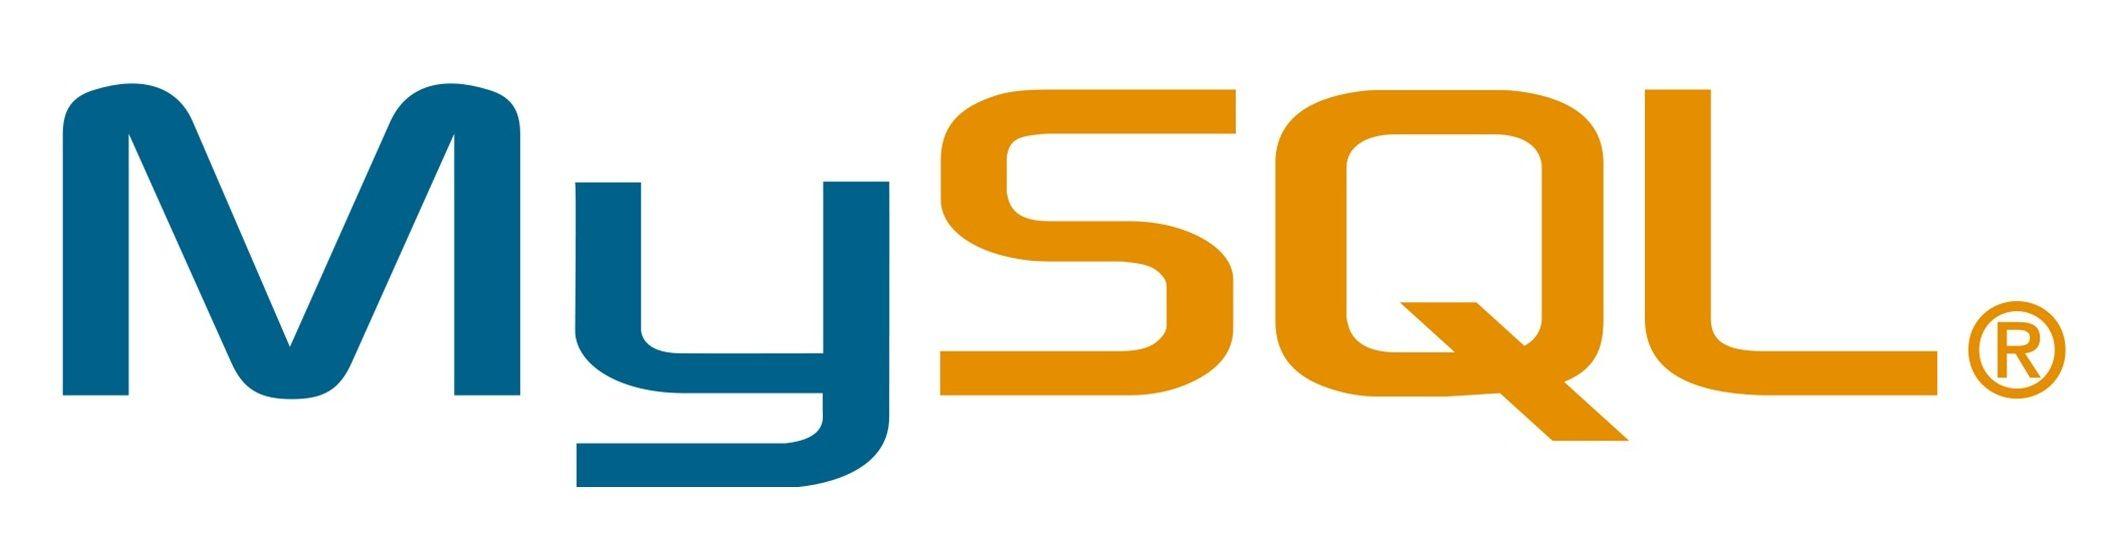 MySQL Logo - mysql-logo-wallpaper – NGX STORAGE